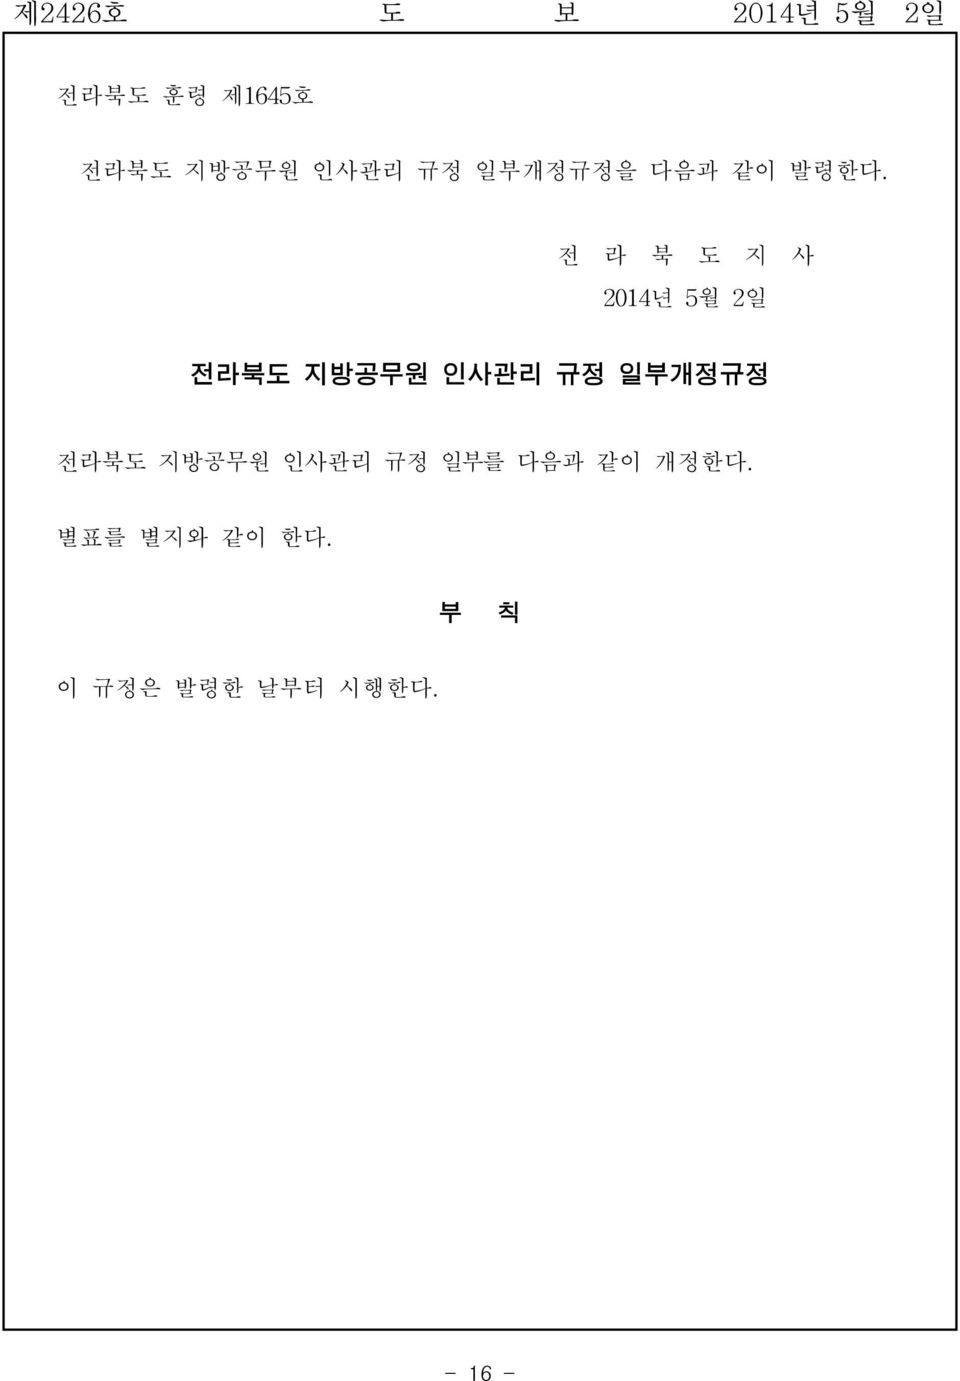 전 라 북 도 지 사 2014년 5월 2일 전라북도 지방공무원 인사관리 규정